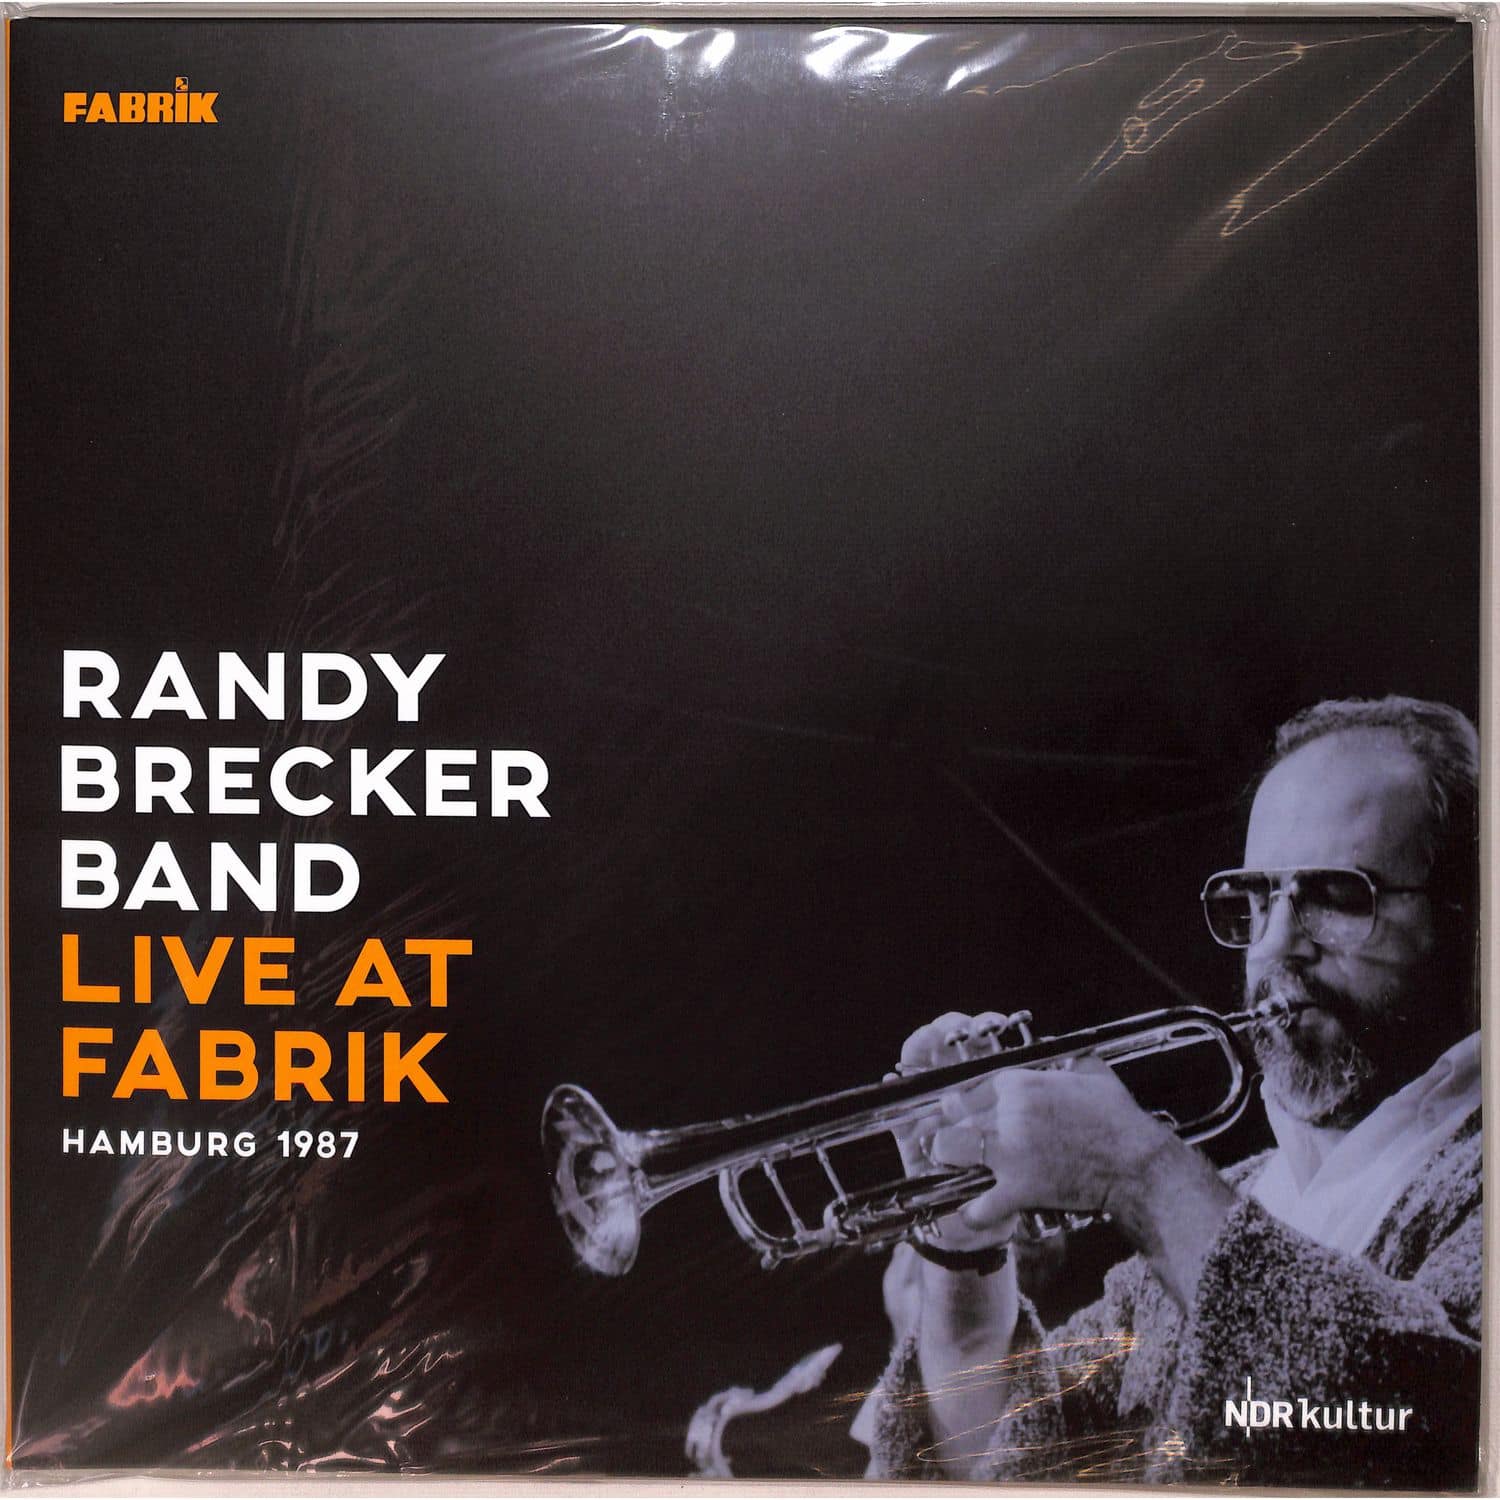 Randy Brecker Band - LIVE AT FABRIK HAMBURG 1987 